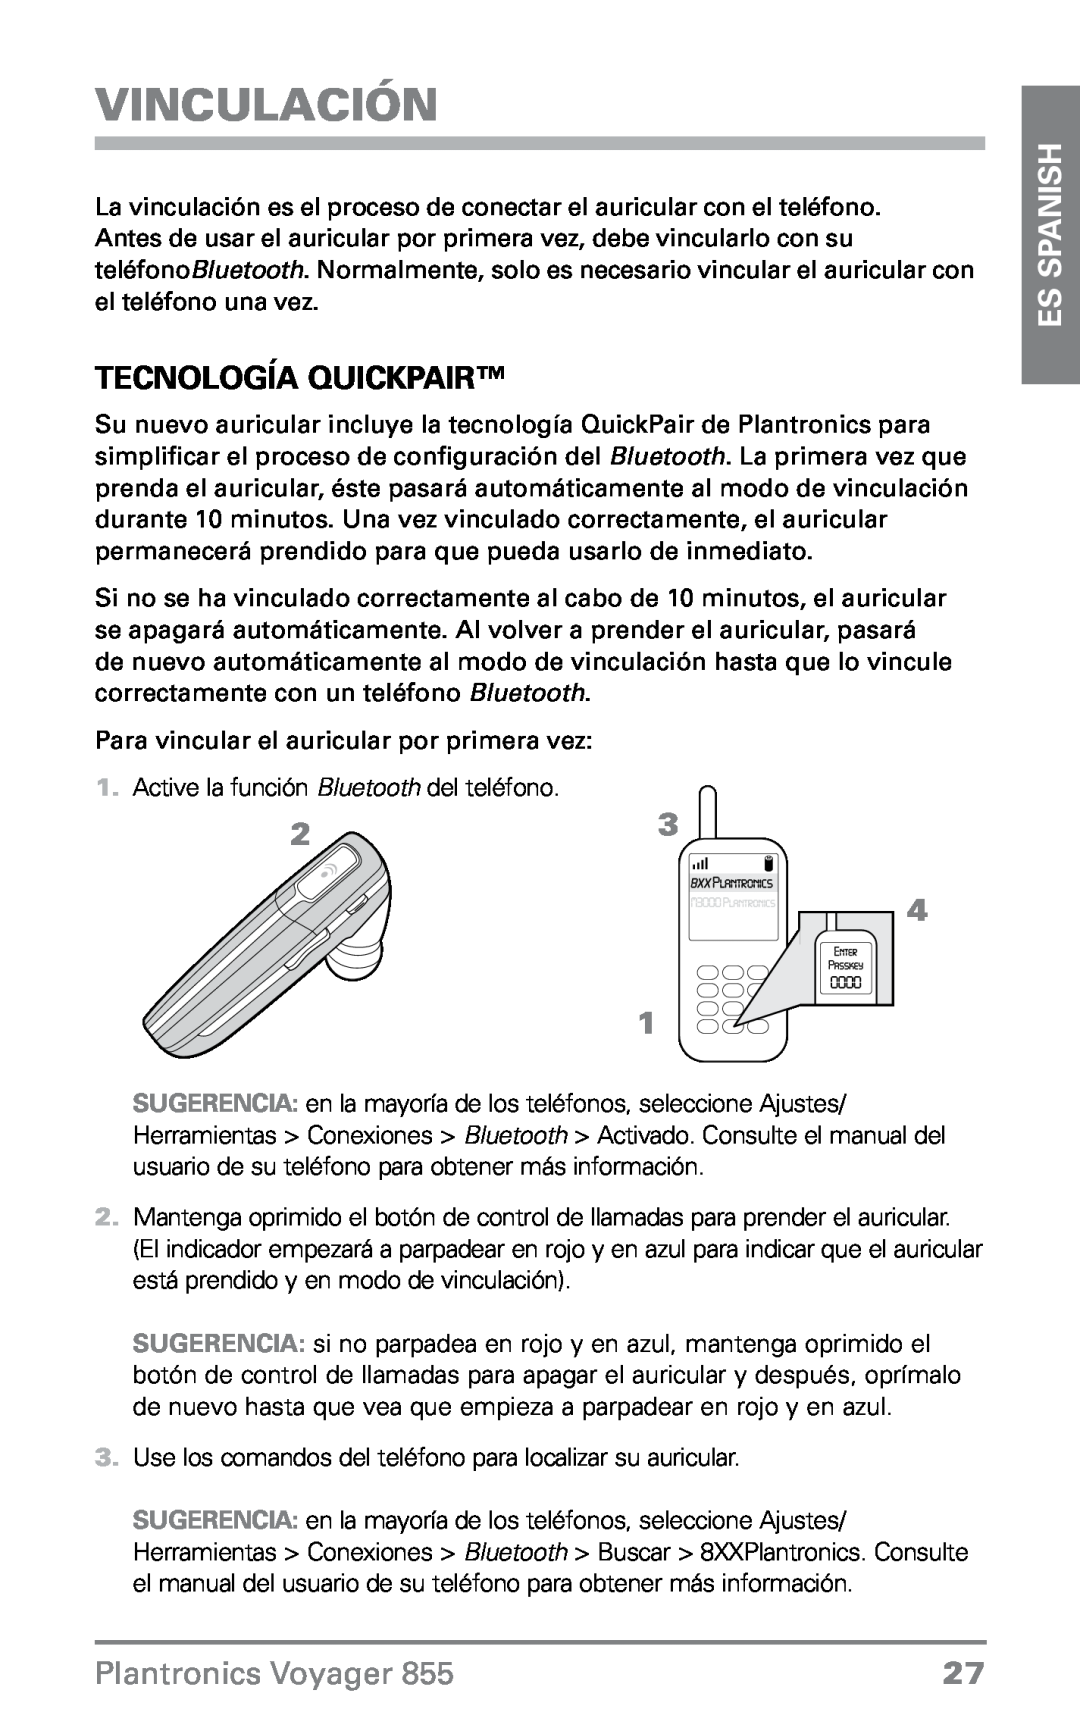 Plantronics VOYAGER855 manual Vinculación, Tecnología QuickPair, ES Spanish, Plantronics Voyager 